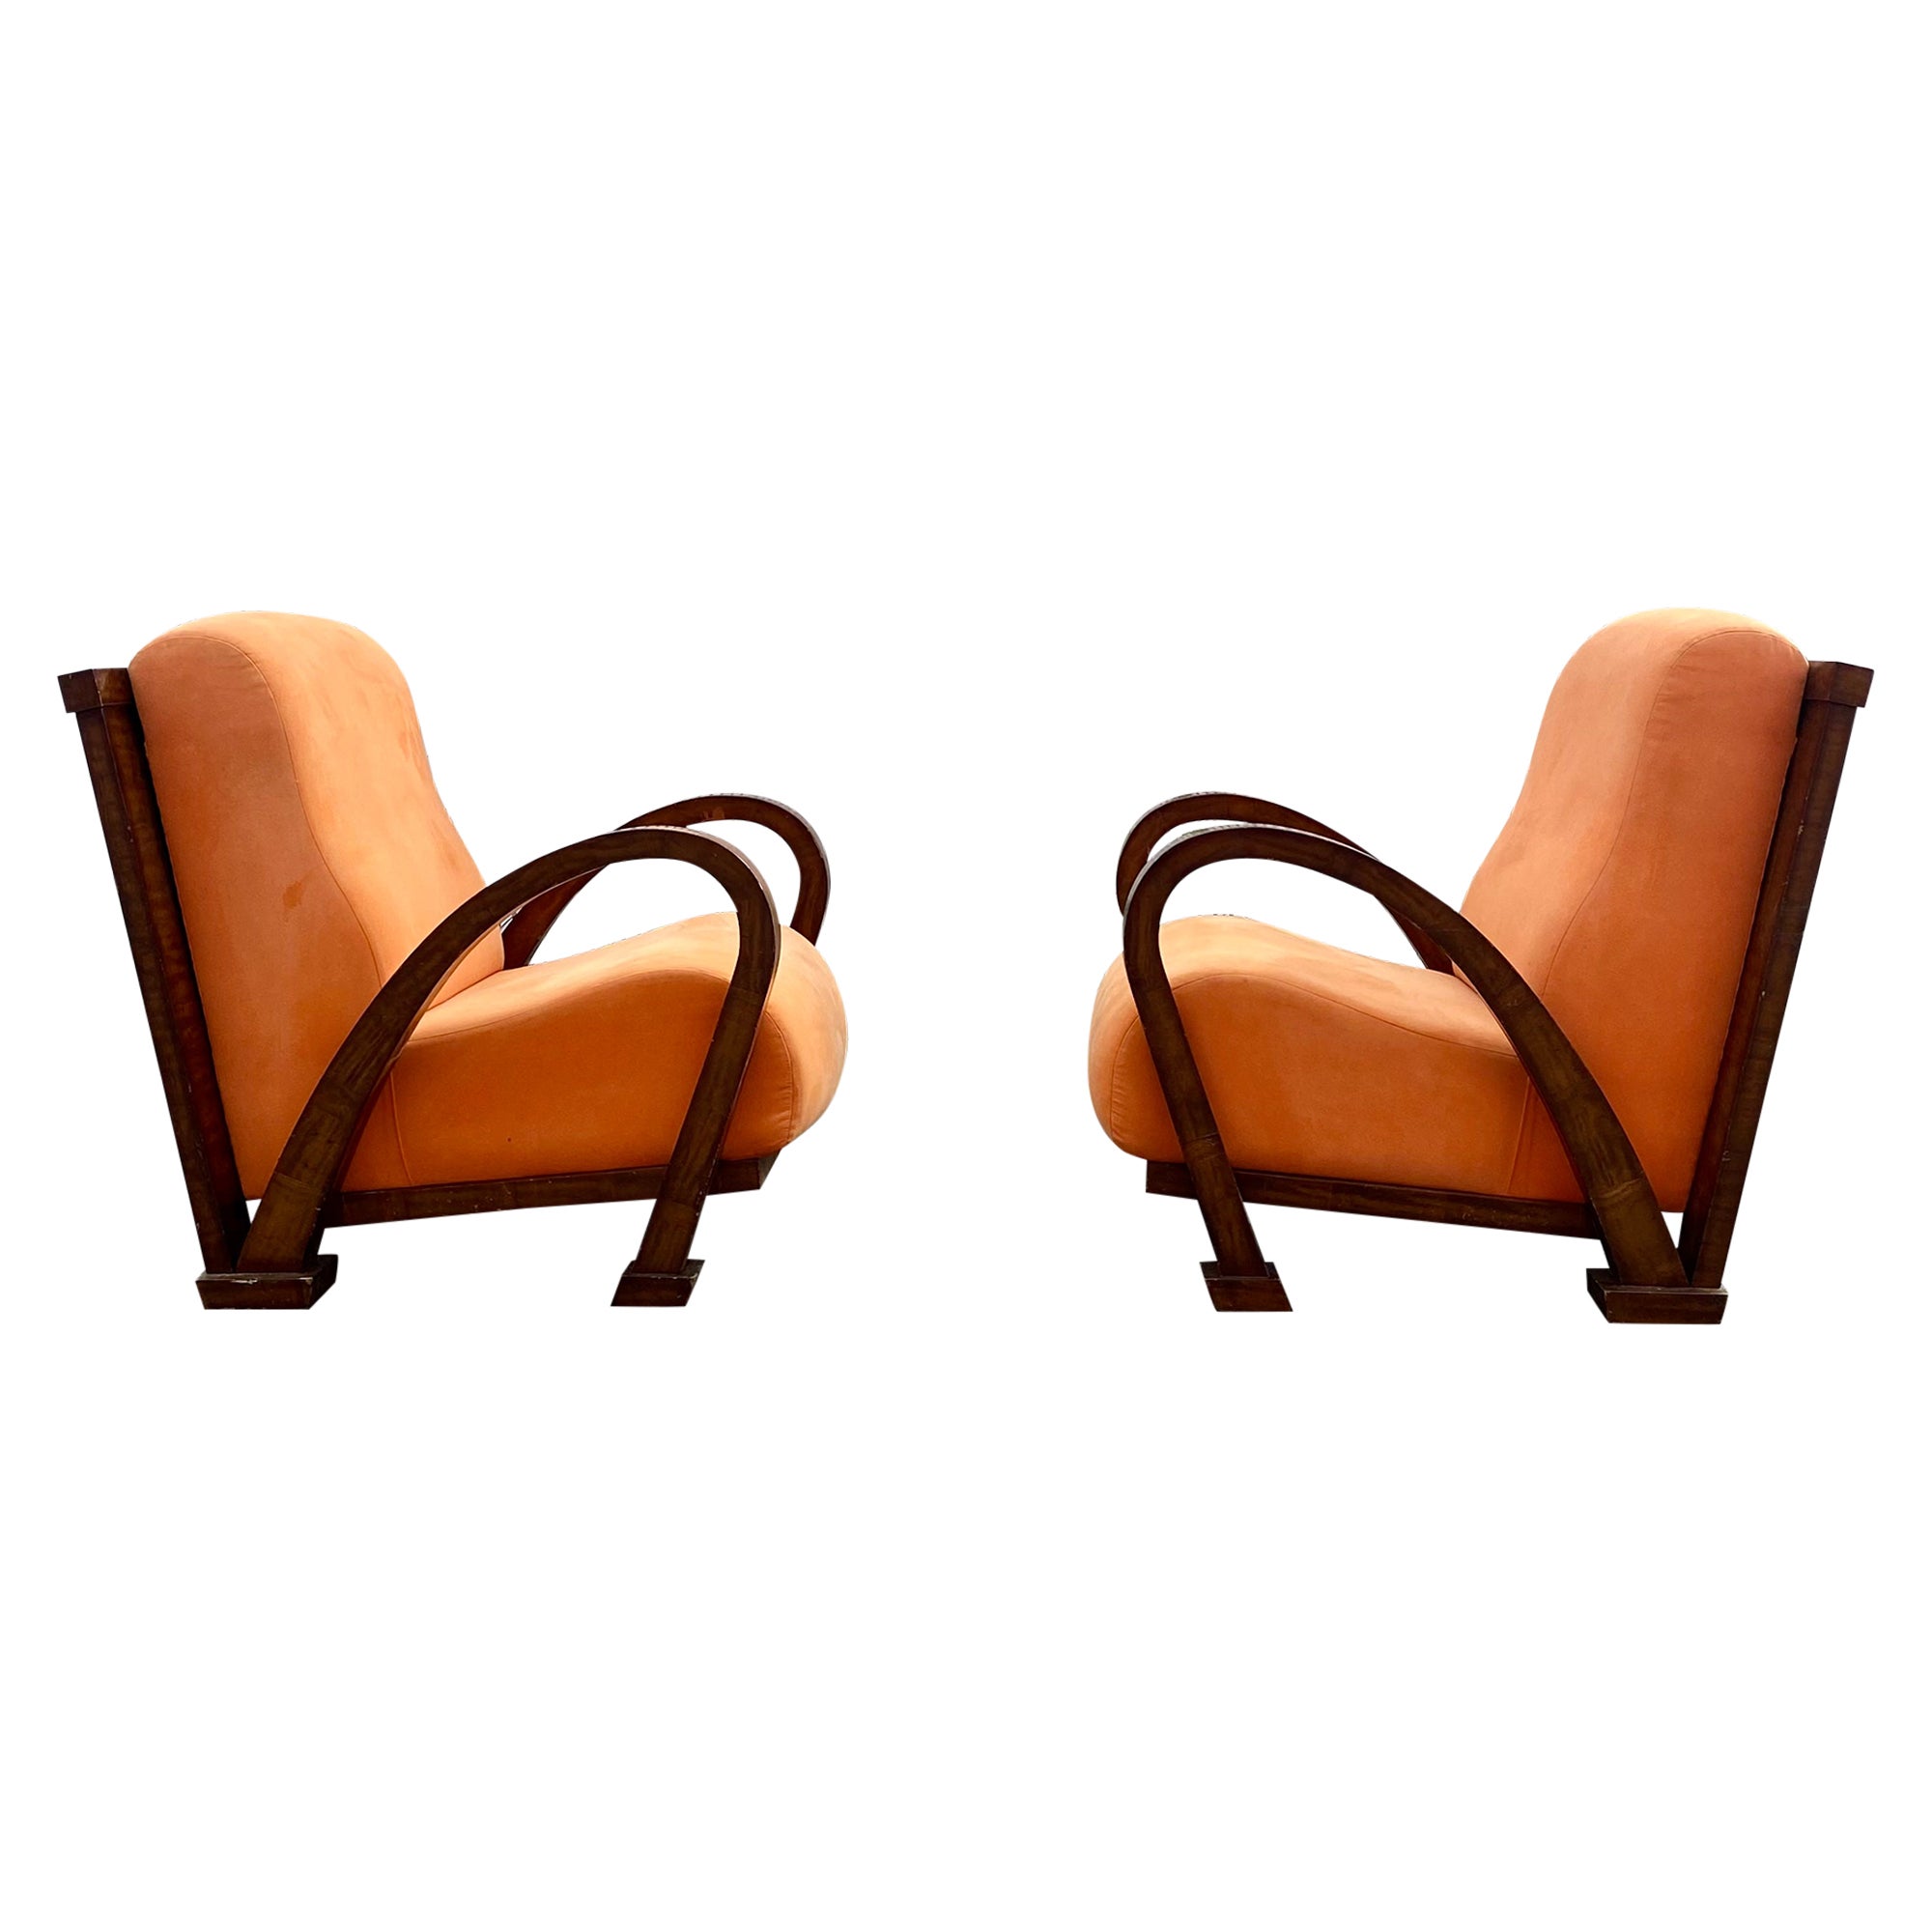 Chaises en bois courbé Art déco des années 1930 en noyer orange, ensemble de 2